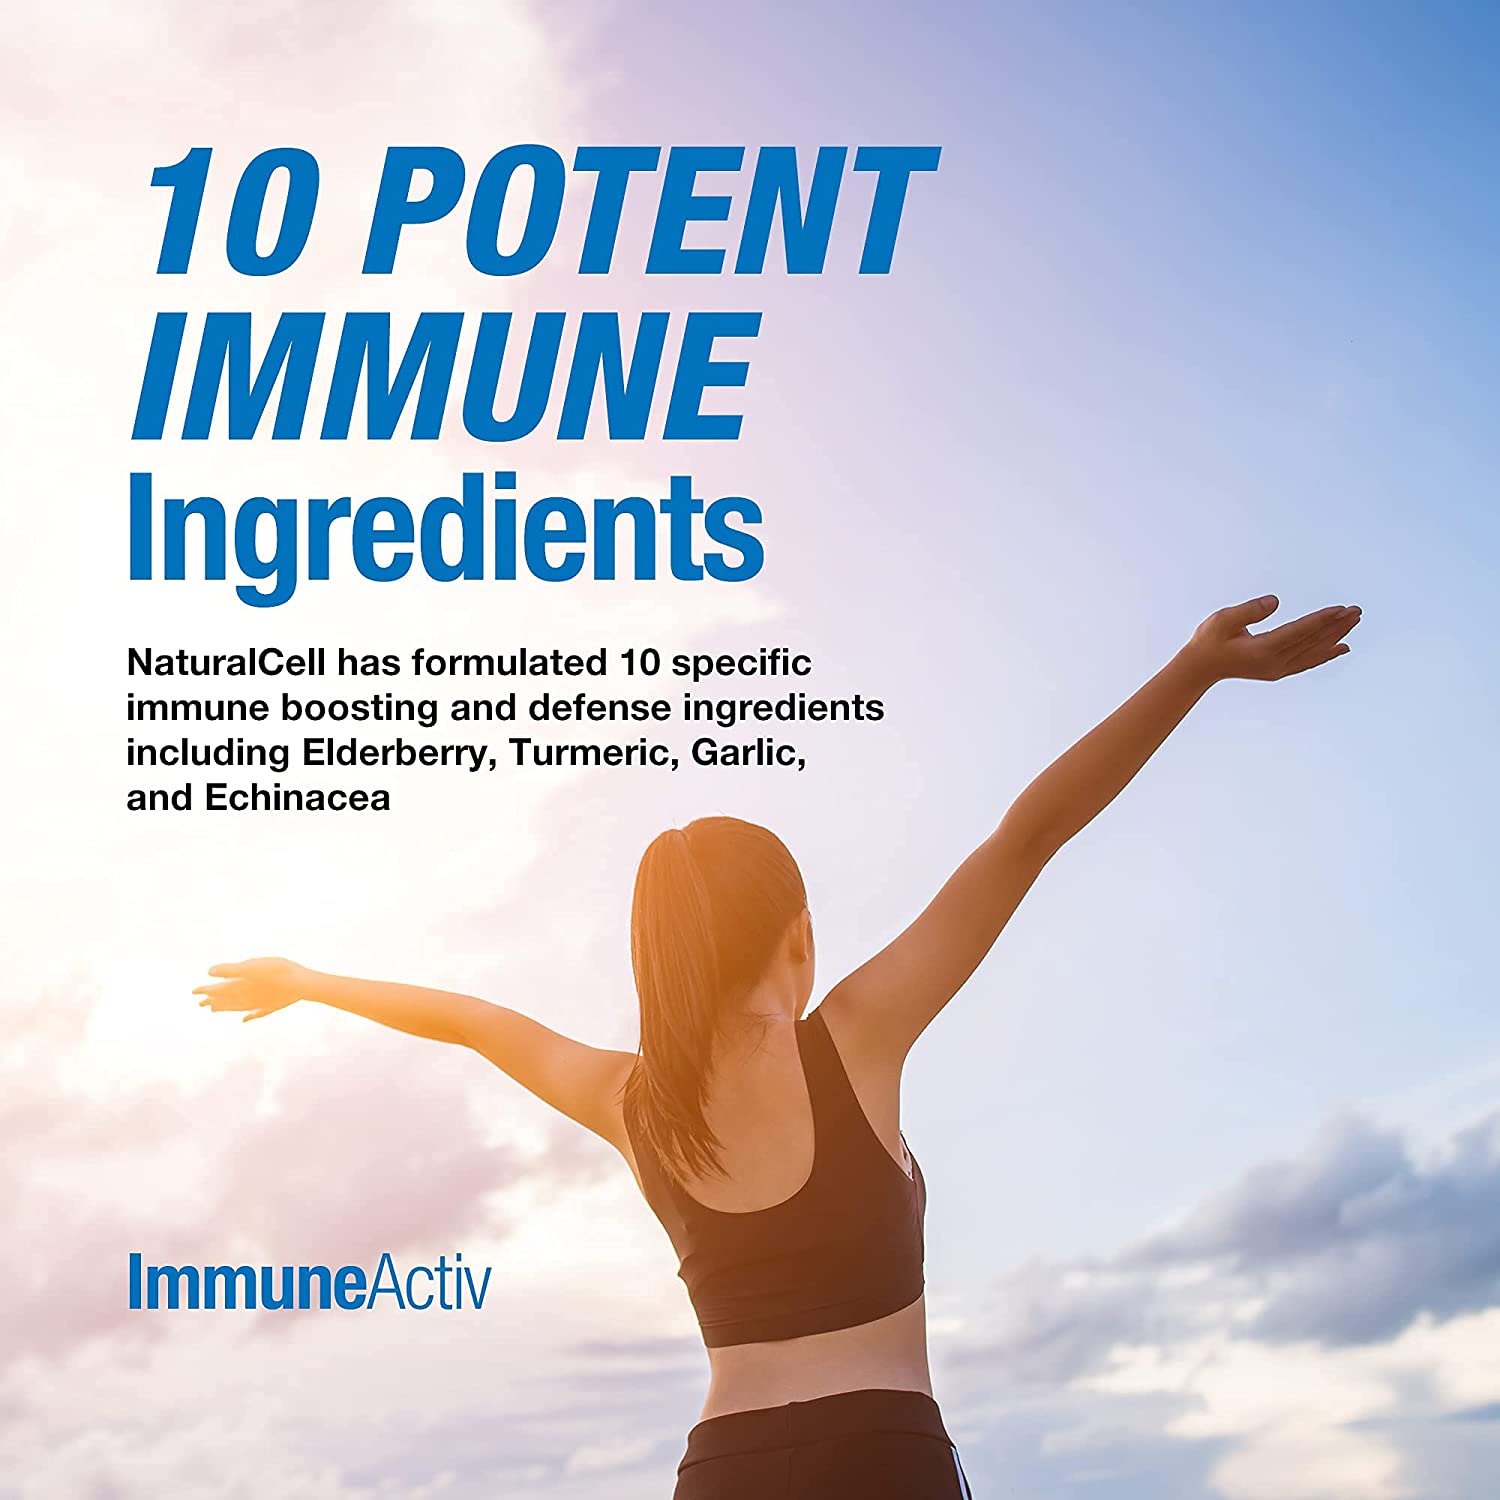 ImmuneActiv - 10-in-1 Immune Support